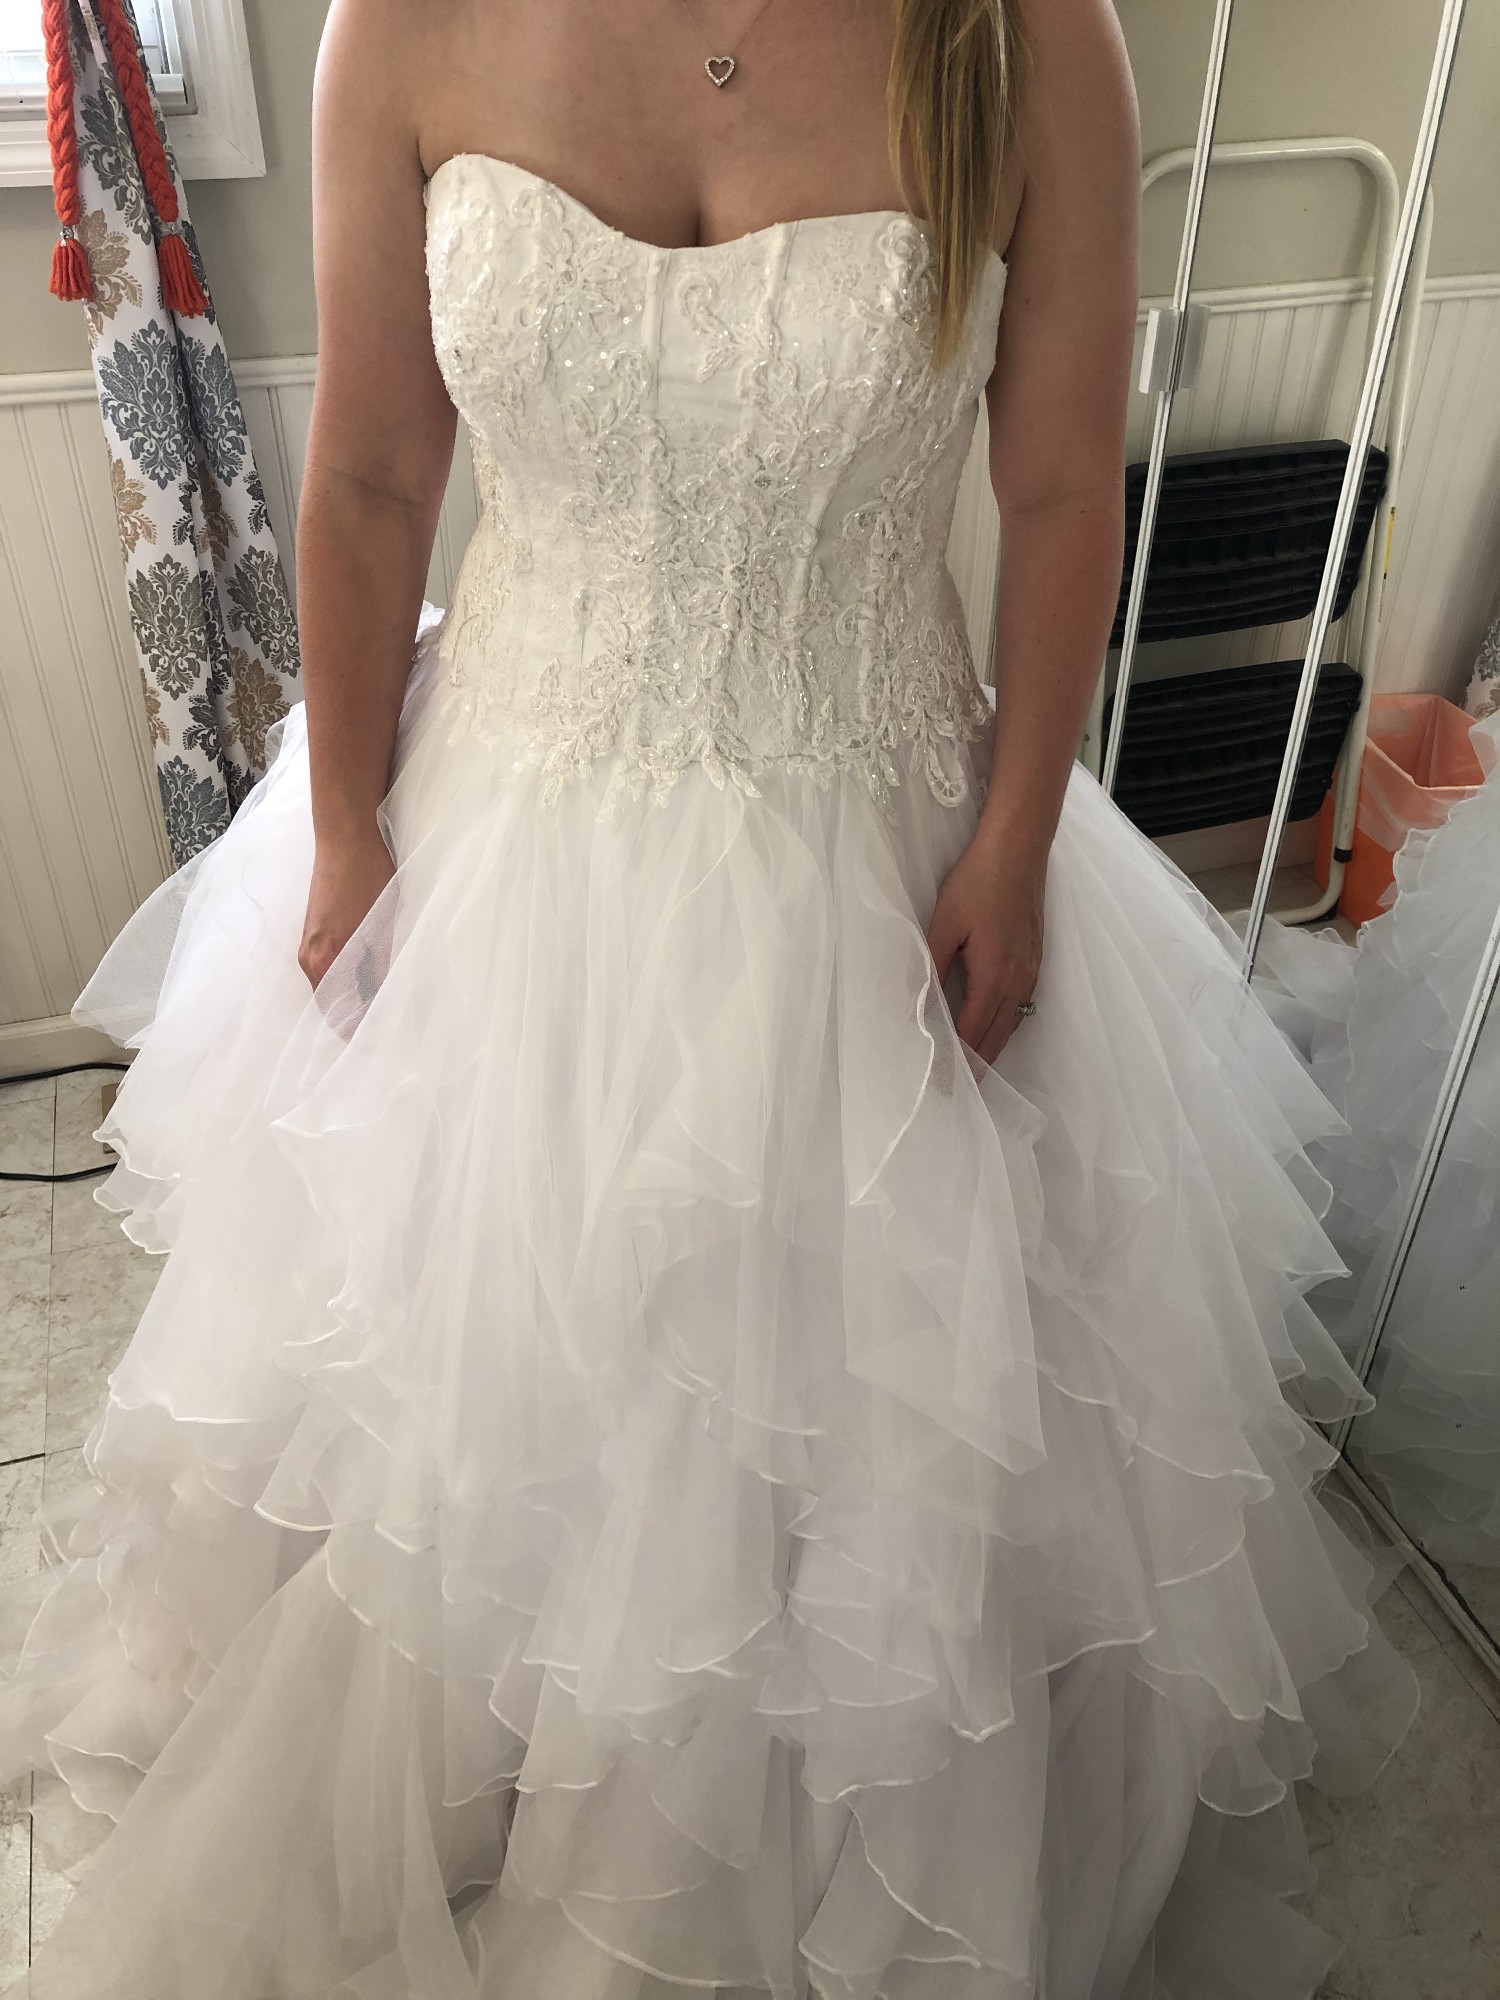 Oleg Cassini Strapless Ruffled Skirt Wedding Dress New Wedding Dress ...